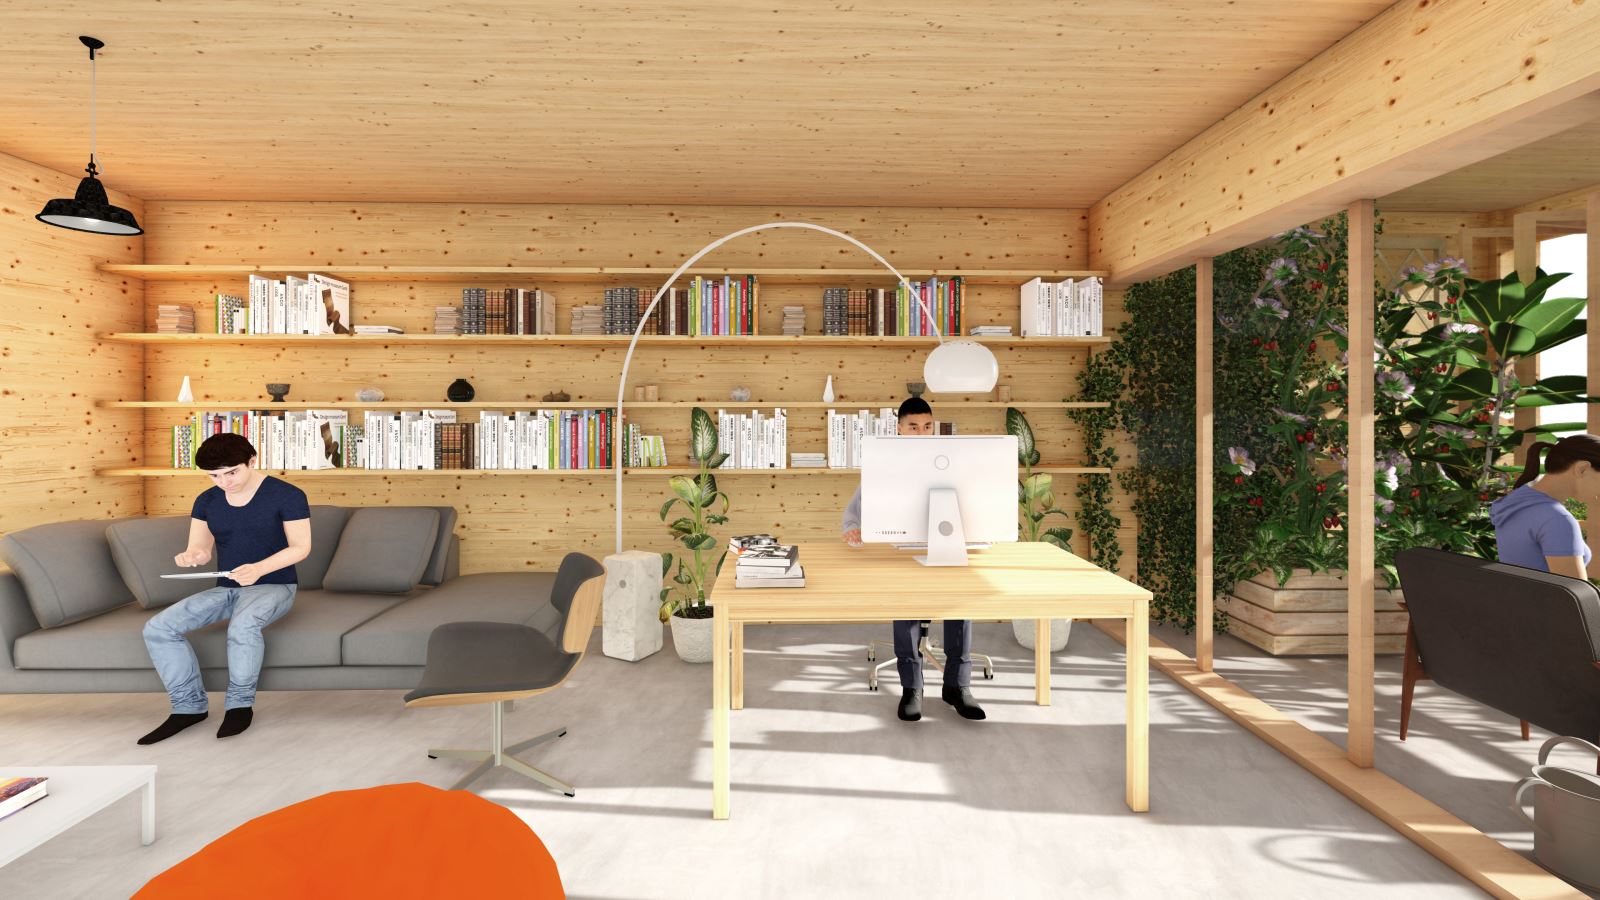  Thiết kế kết hợp nhà ở với không gian mở để làm việc từ xa. Ảnh: Vincente Guallart